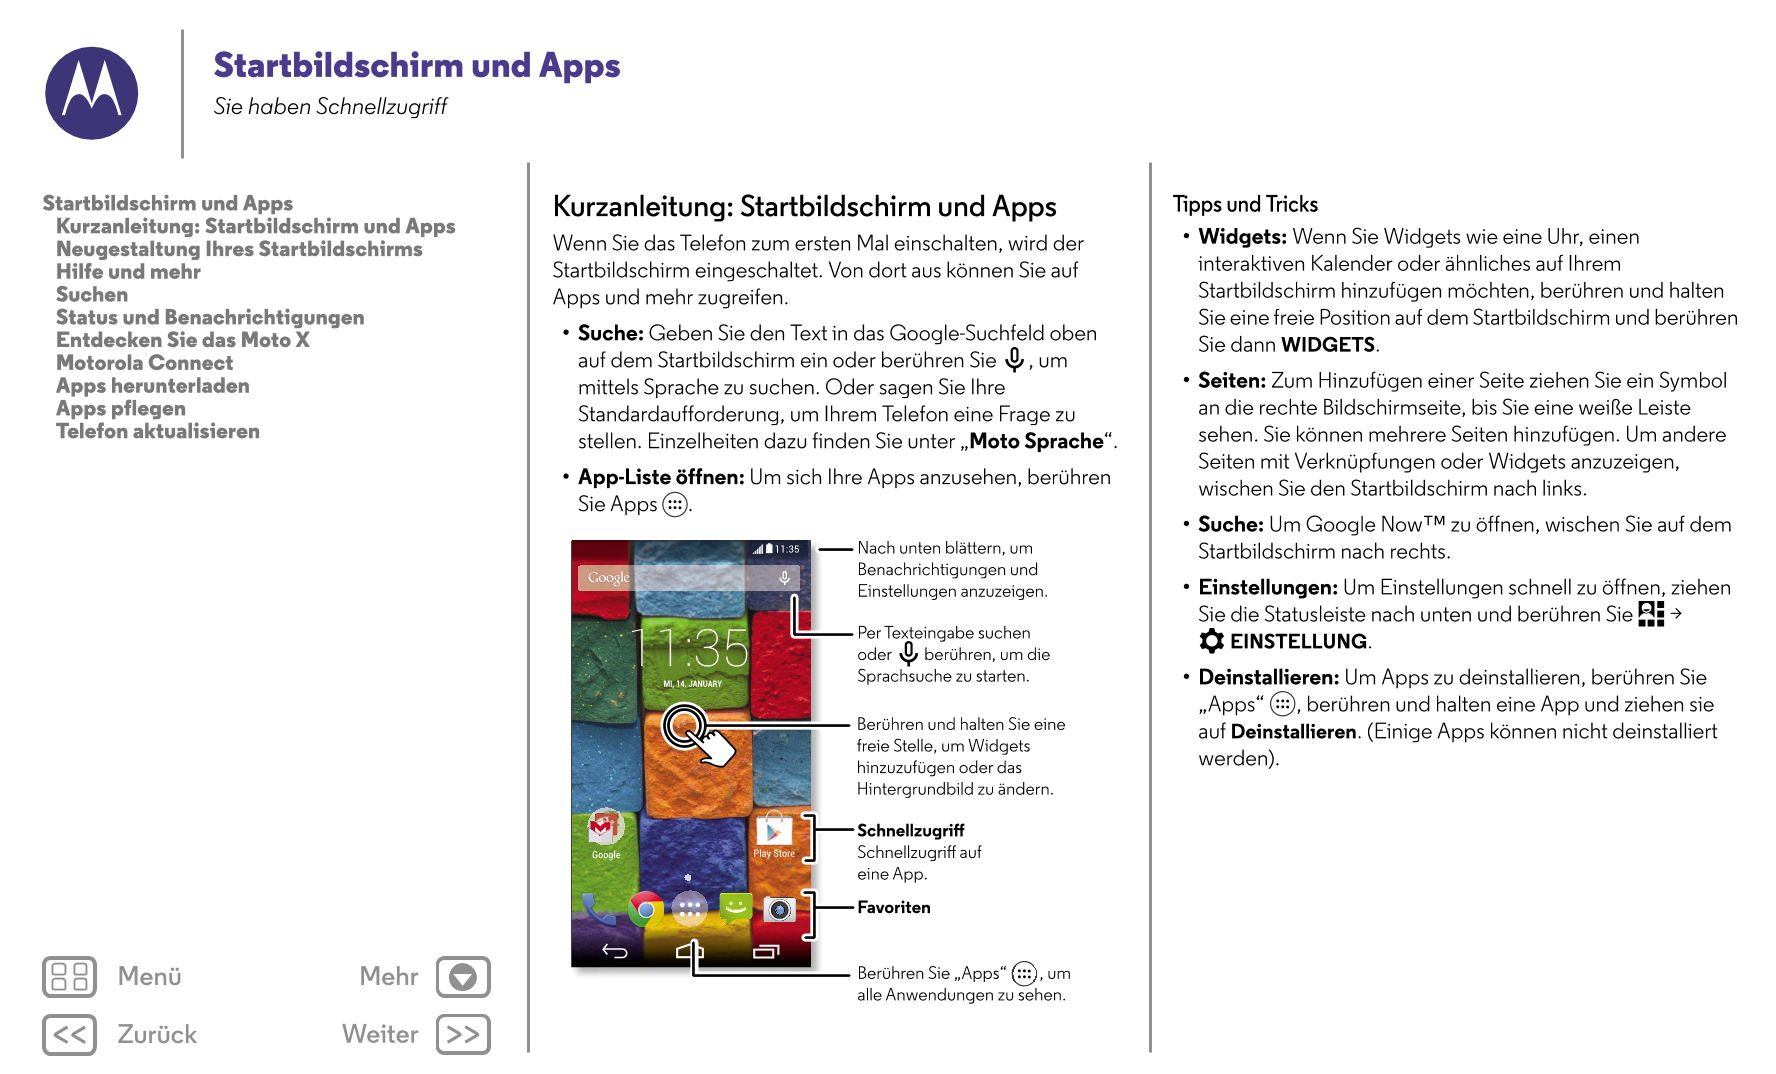 Startbildschirm und Apps
Sie haben Schnellzugriff
Startbildschirm und Apps Kurzanleitung: Startbildschirm und Apps Tipps und Tri